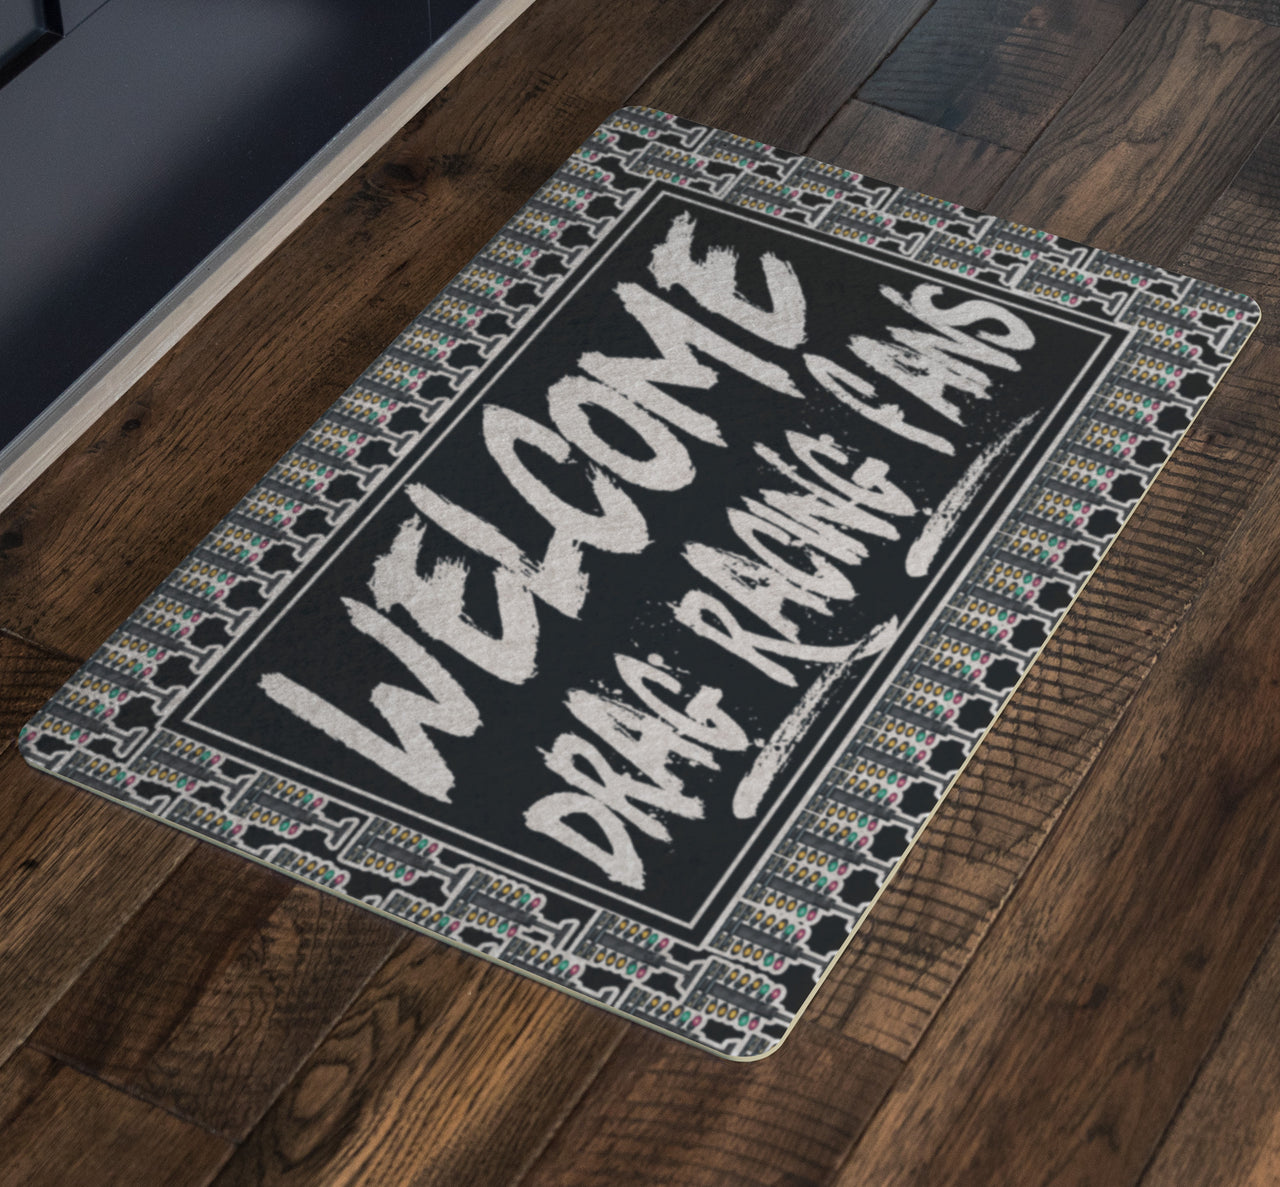 Welcome Drag Racing Fans Doormat